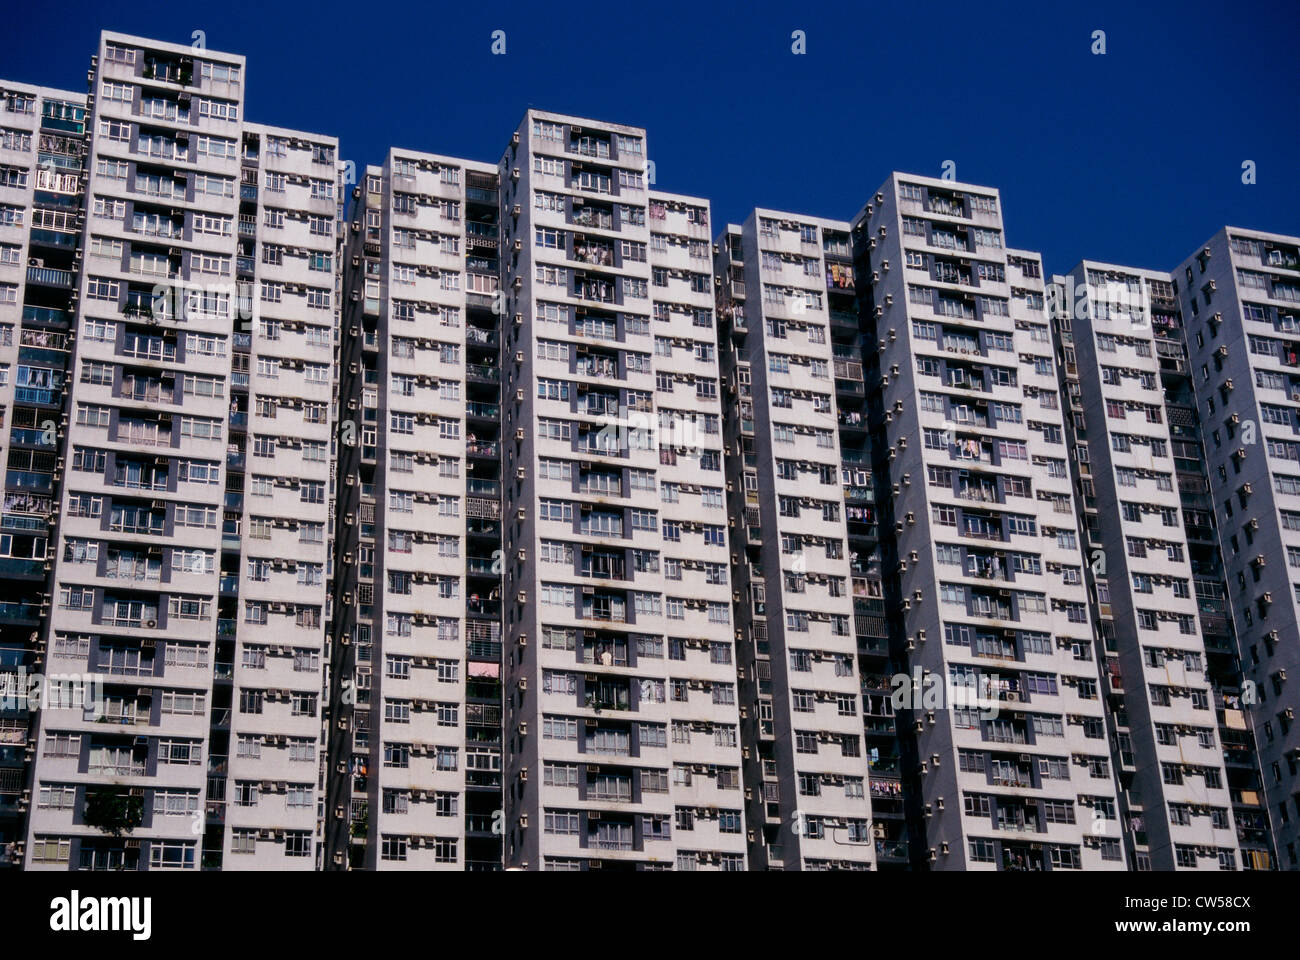 Low angle view of buildings, Hong Kong, China Stock Photo